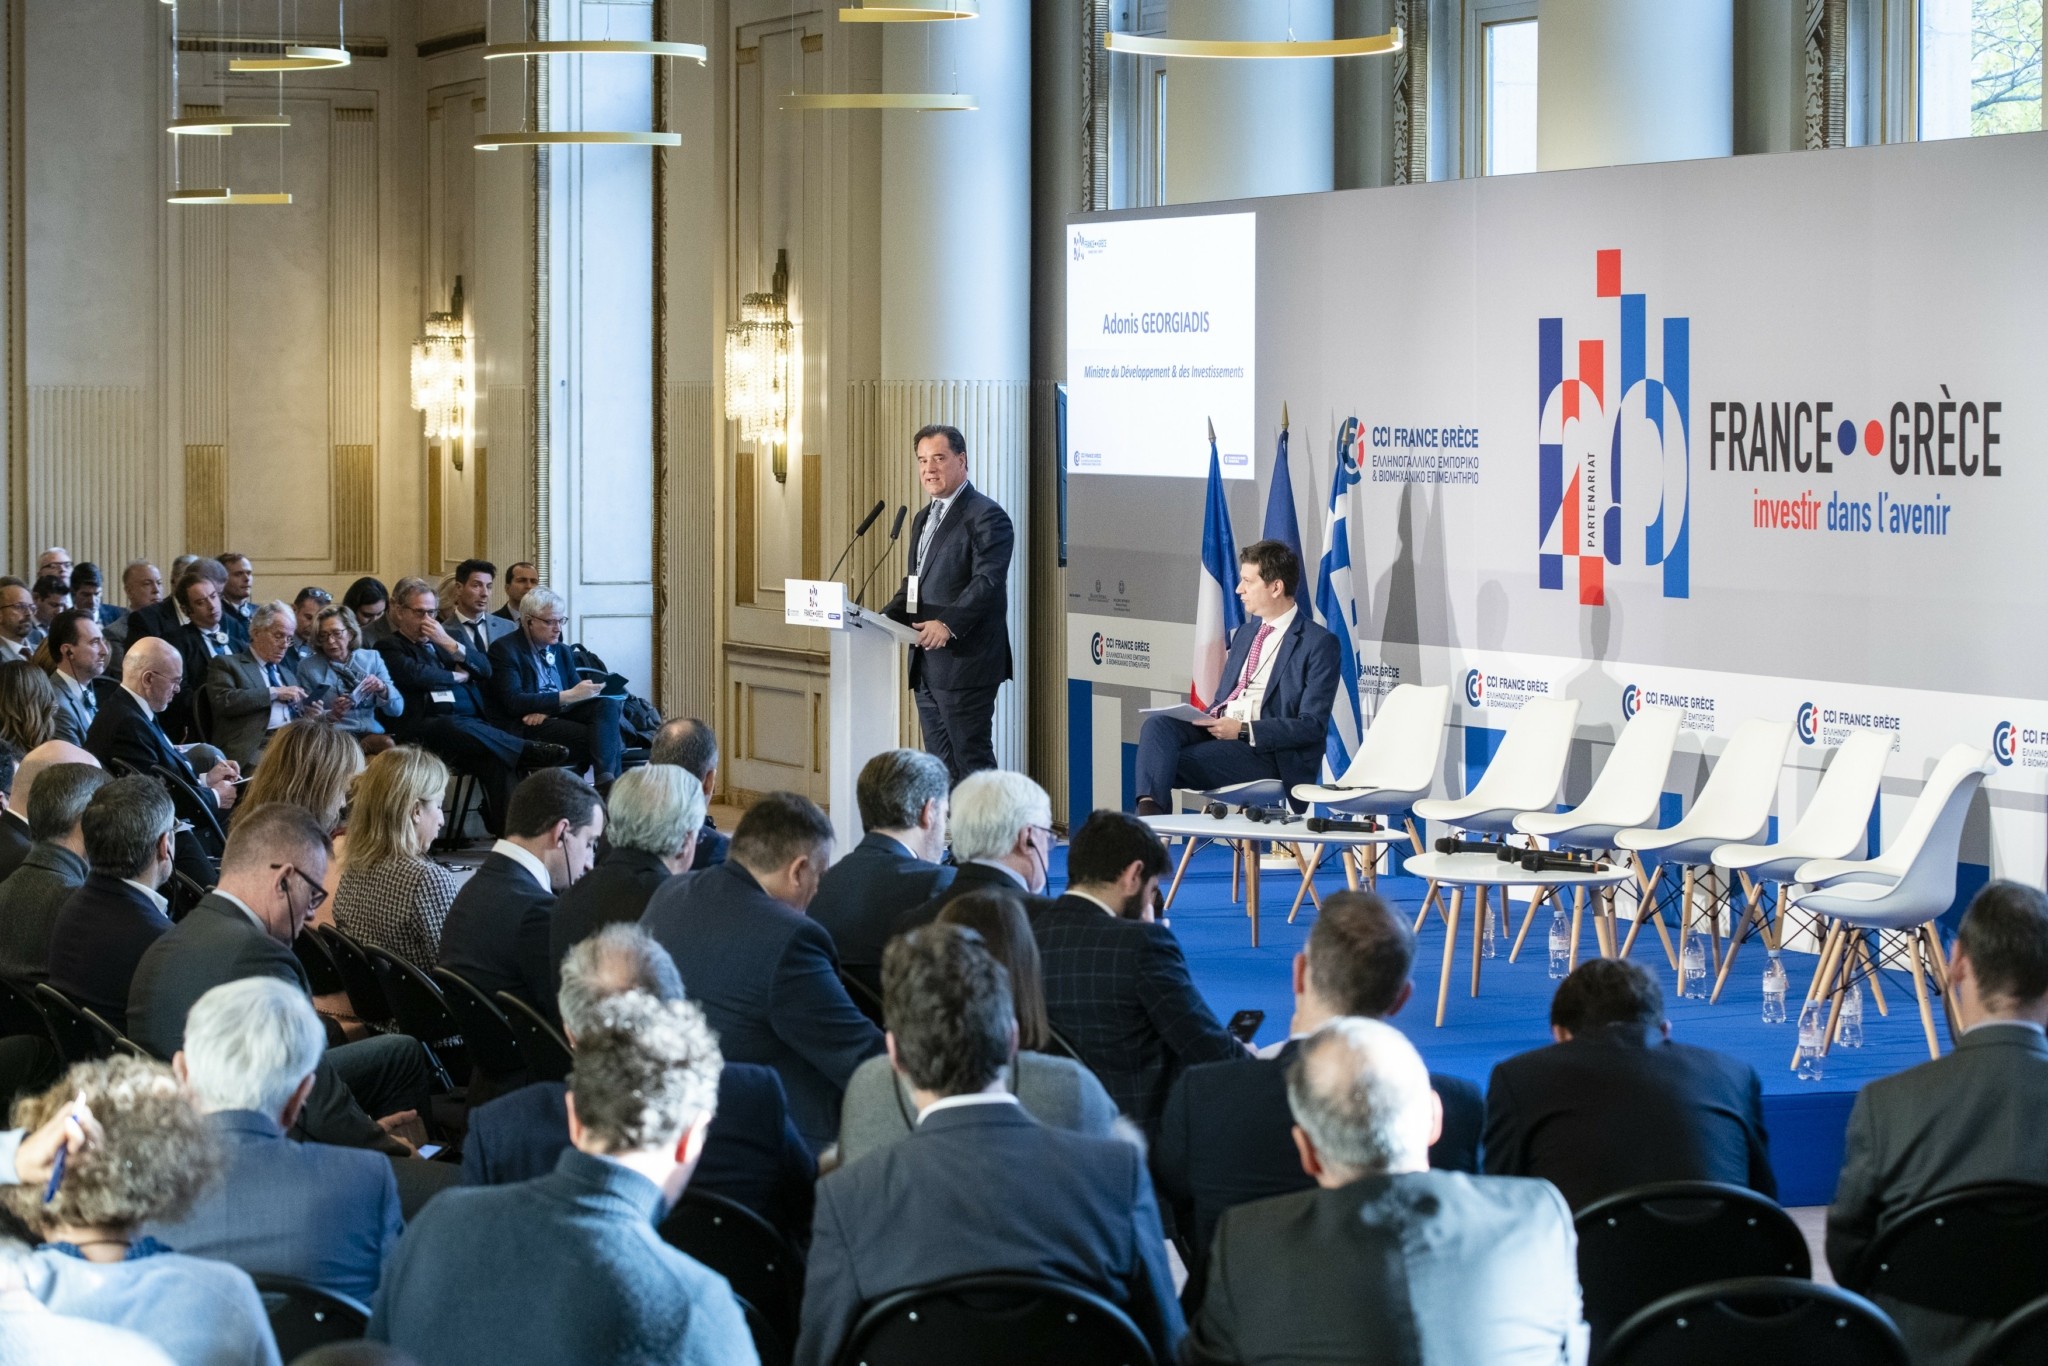 Αναπληρωτής υπουργός Εμπορίου της Γαλλίας: Είναι η στιγμή οι γαλλικές επιχειρήσεις να επενδύσουν στην Ελλάδα